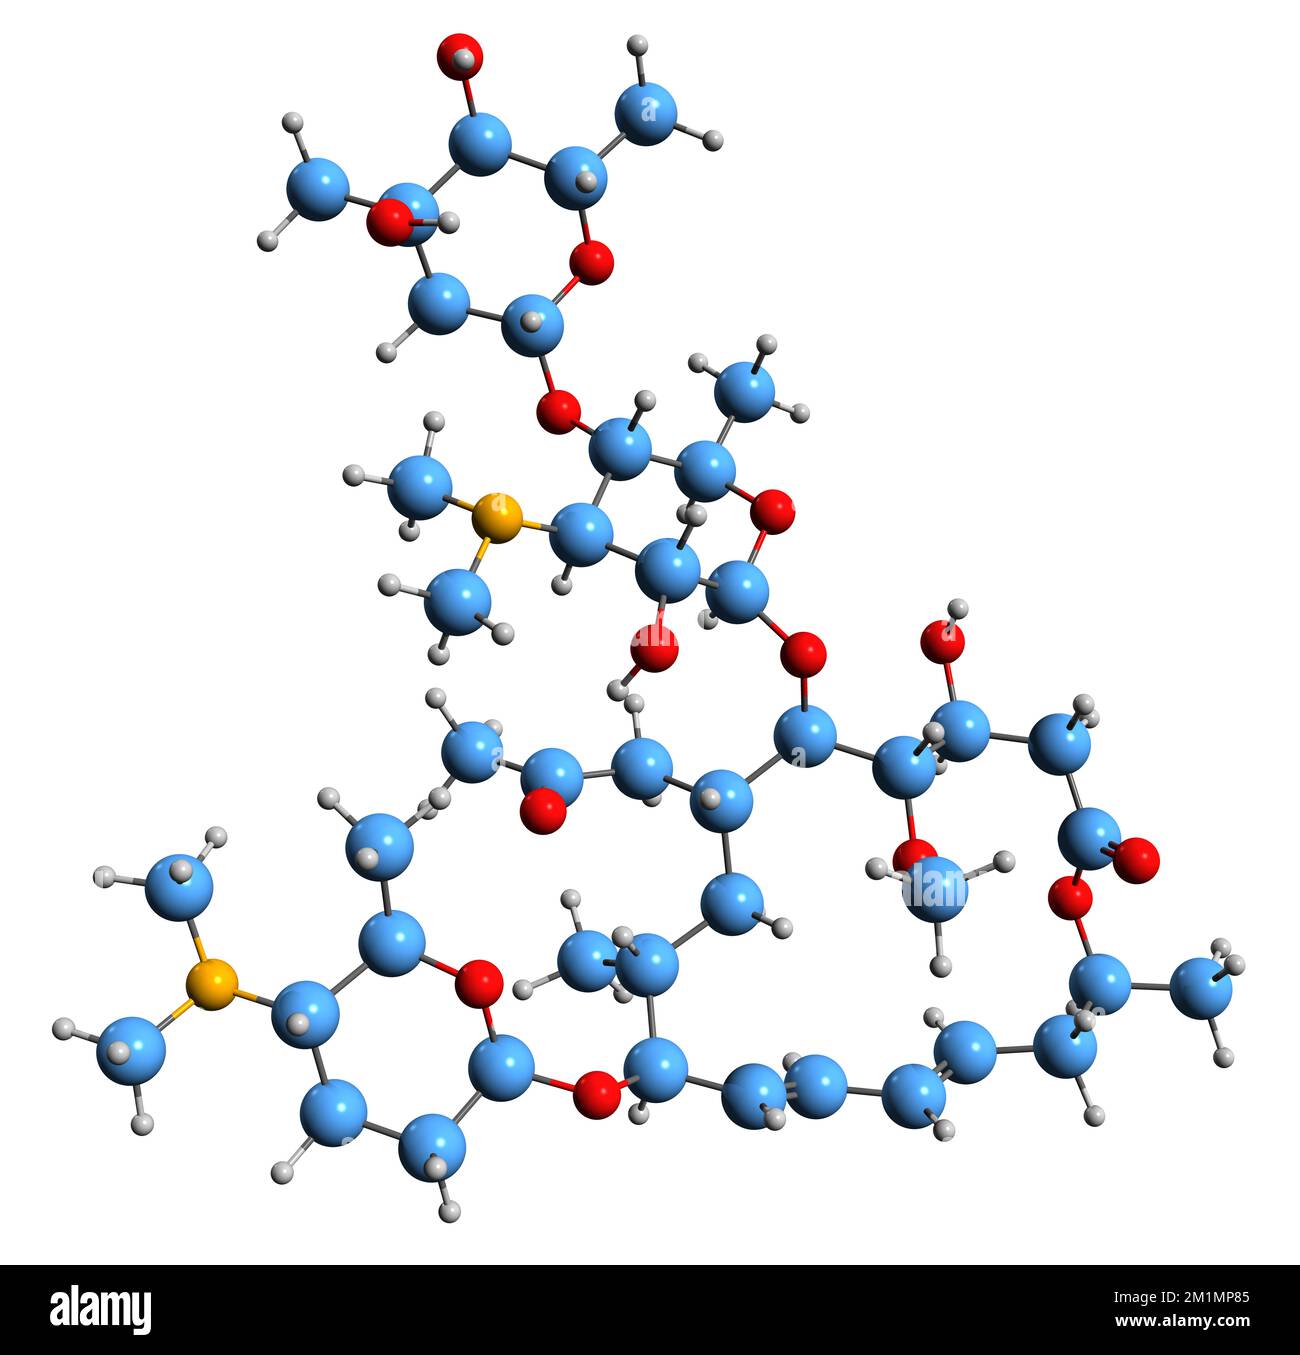 3D-Bild der Spiramycin-Skelettformel - molekularchemische Struktur eines auf weißem Hintergrund isolierten Makrolid-Antibiotikums Stockfoto